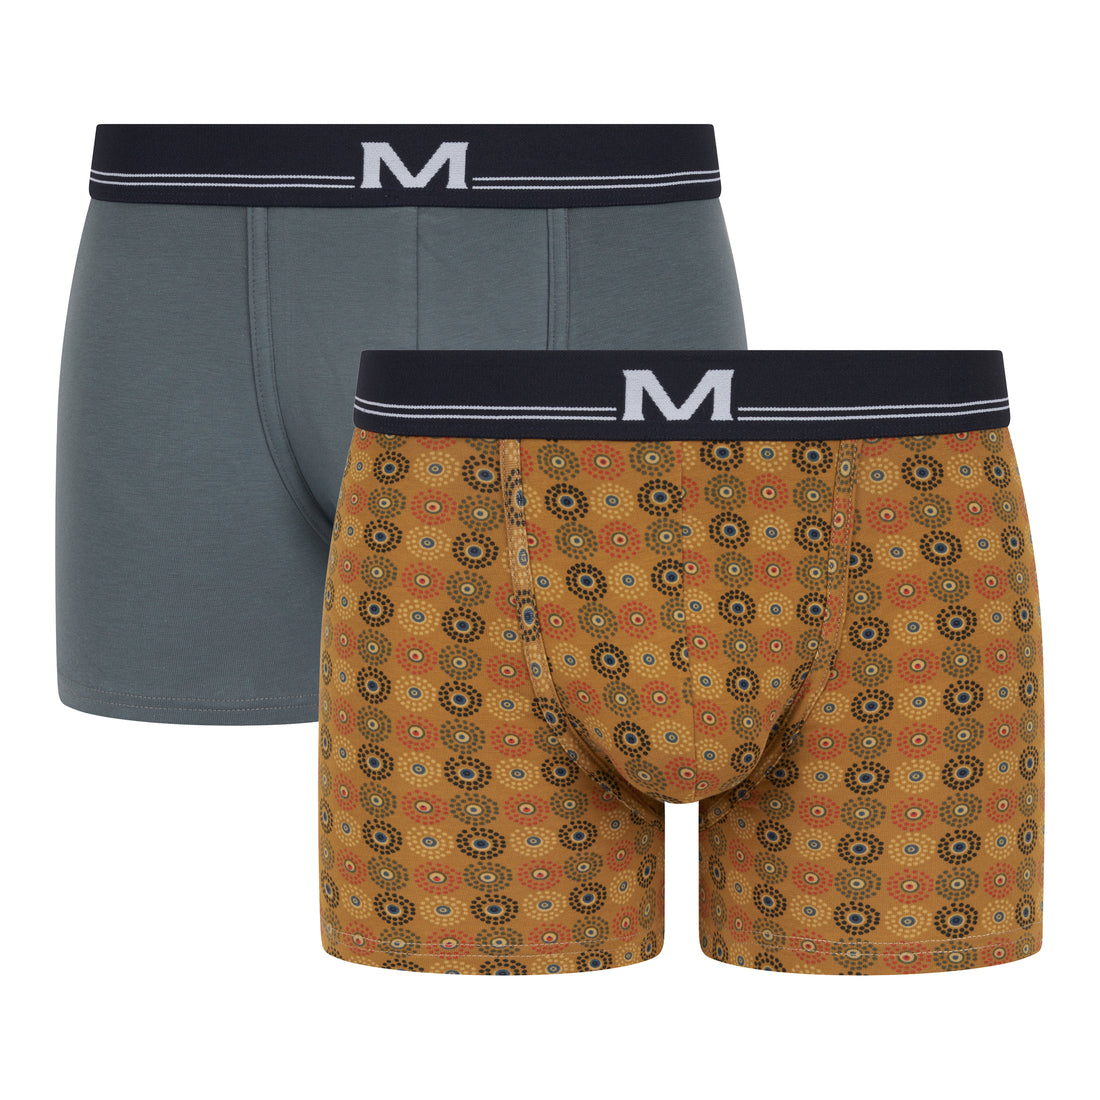 Shortys Pour Homme  Mariner – Mariner underwear